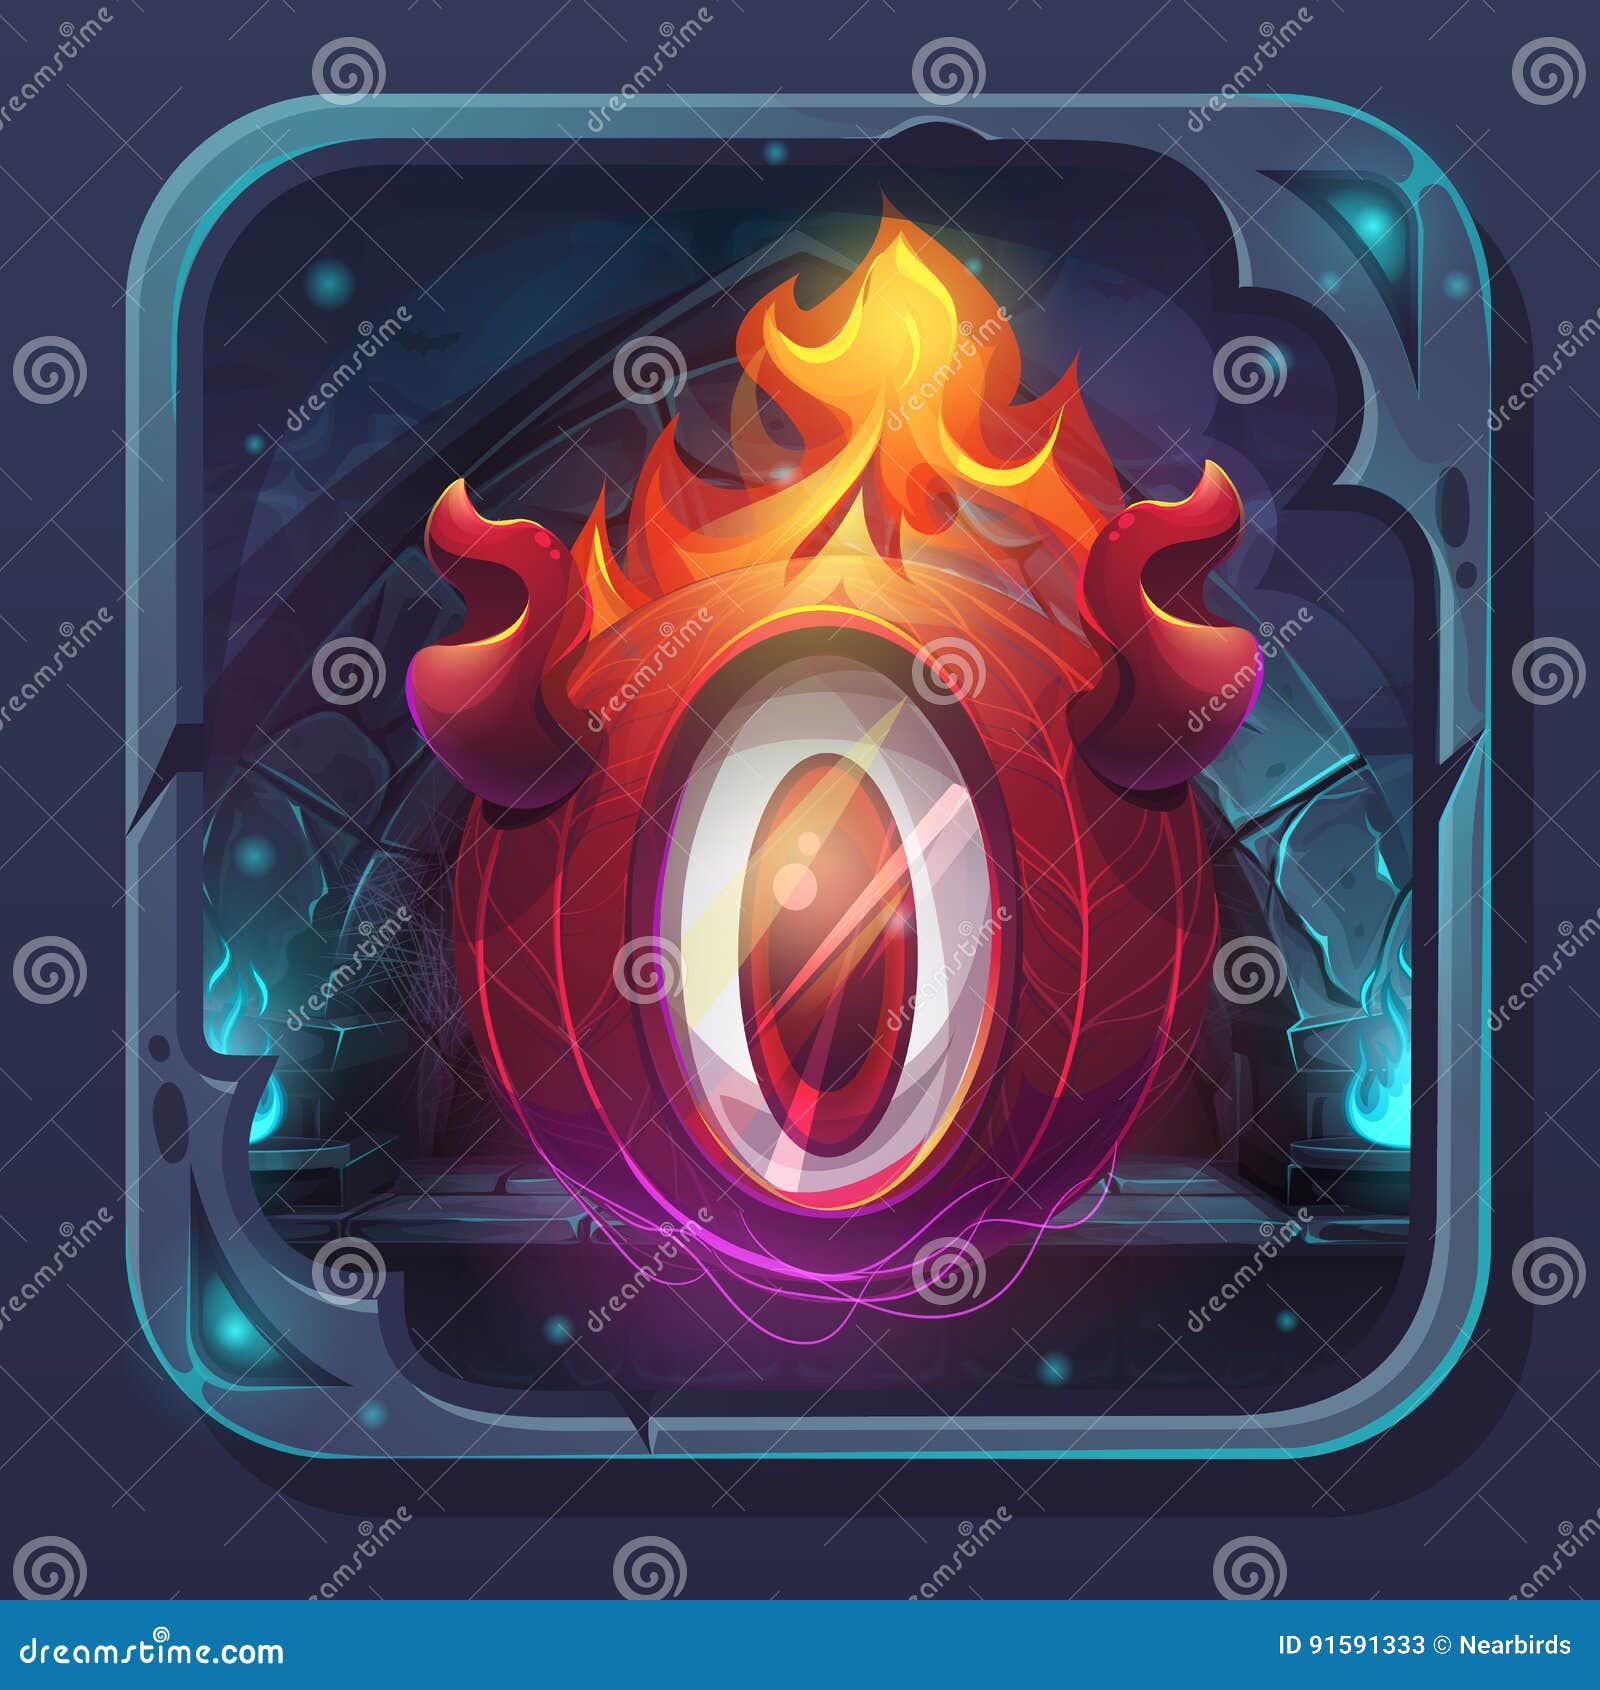 monster battle gui icon eldiablo flame